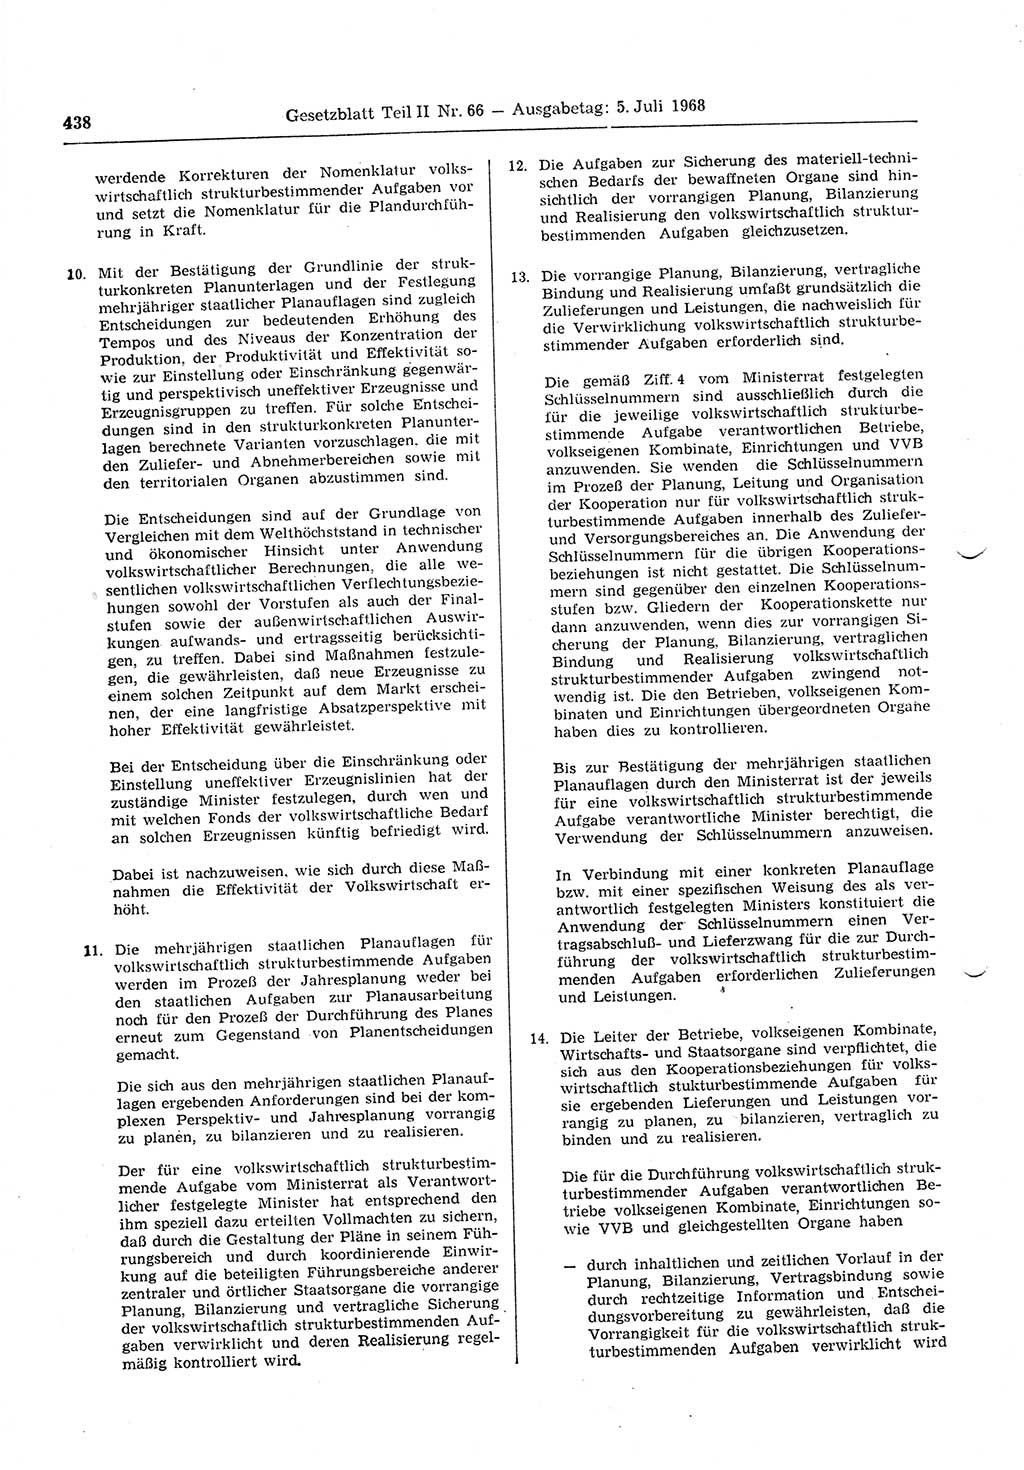 Gesetzblatt (GBl.) der Deutschen Demokratischen Republik (DDR) Teil ⅠⅠ 1968, Seite 438 (GBl. DDR ⅠⅠ 1968, S. 438)